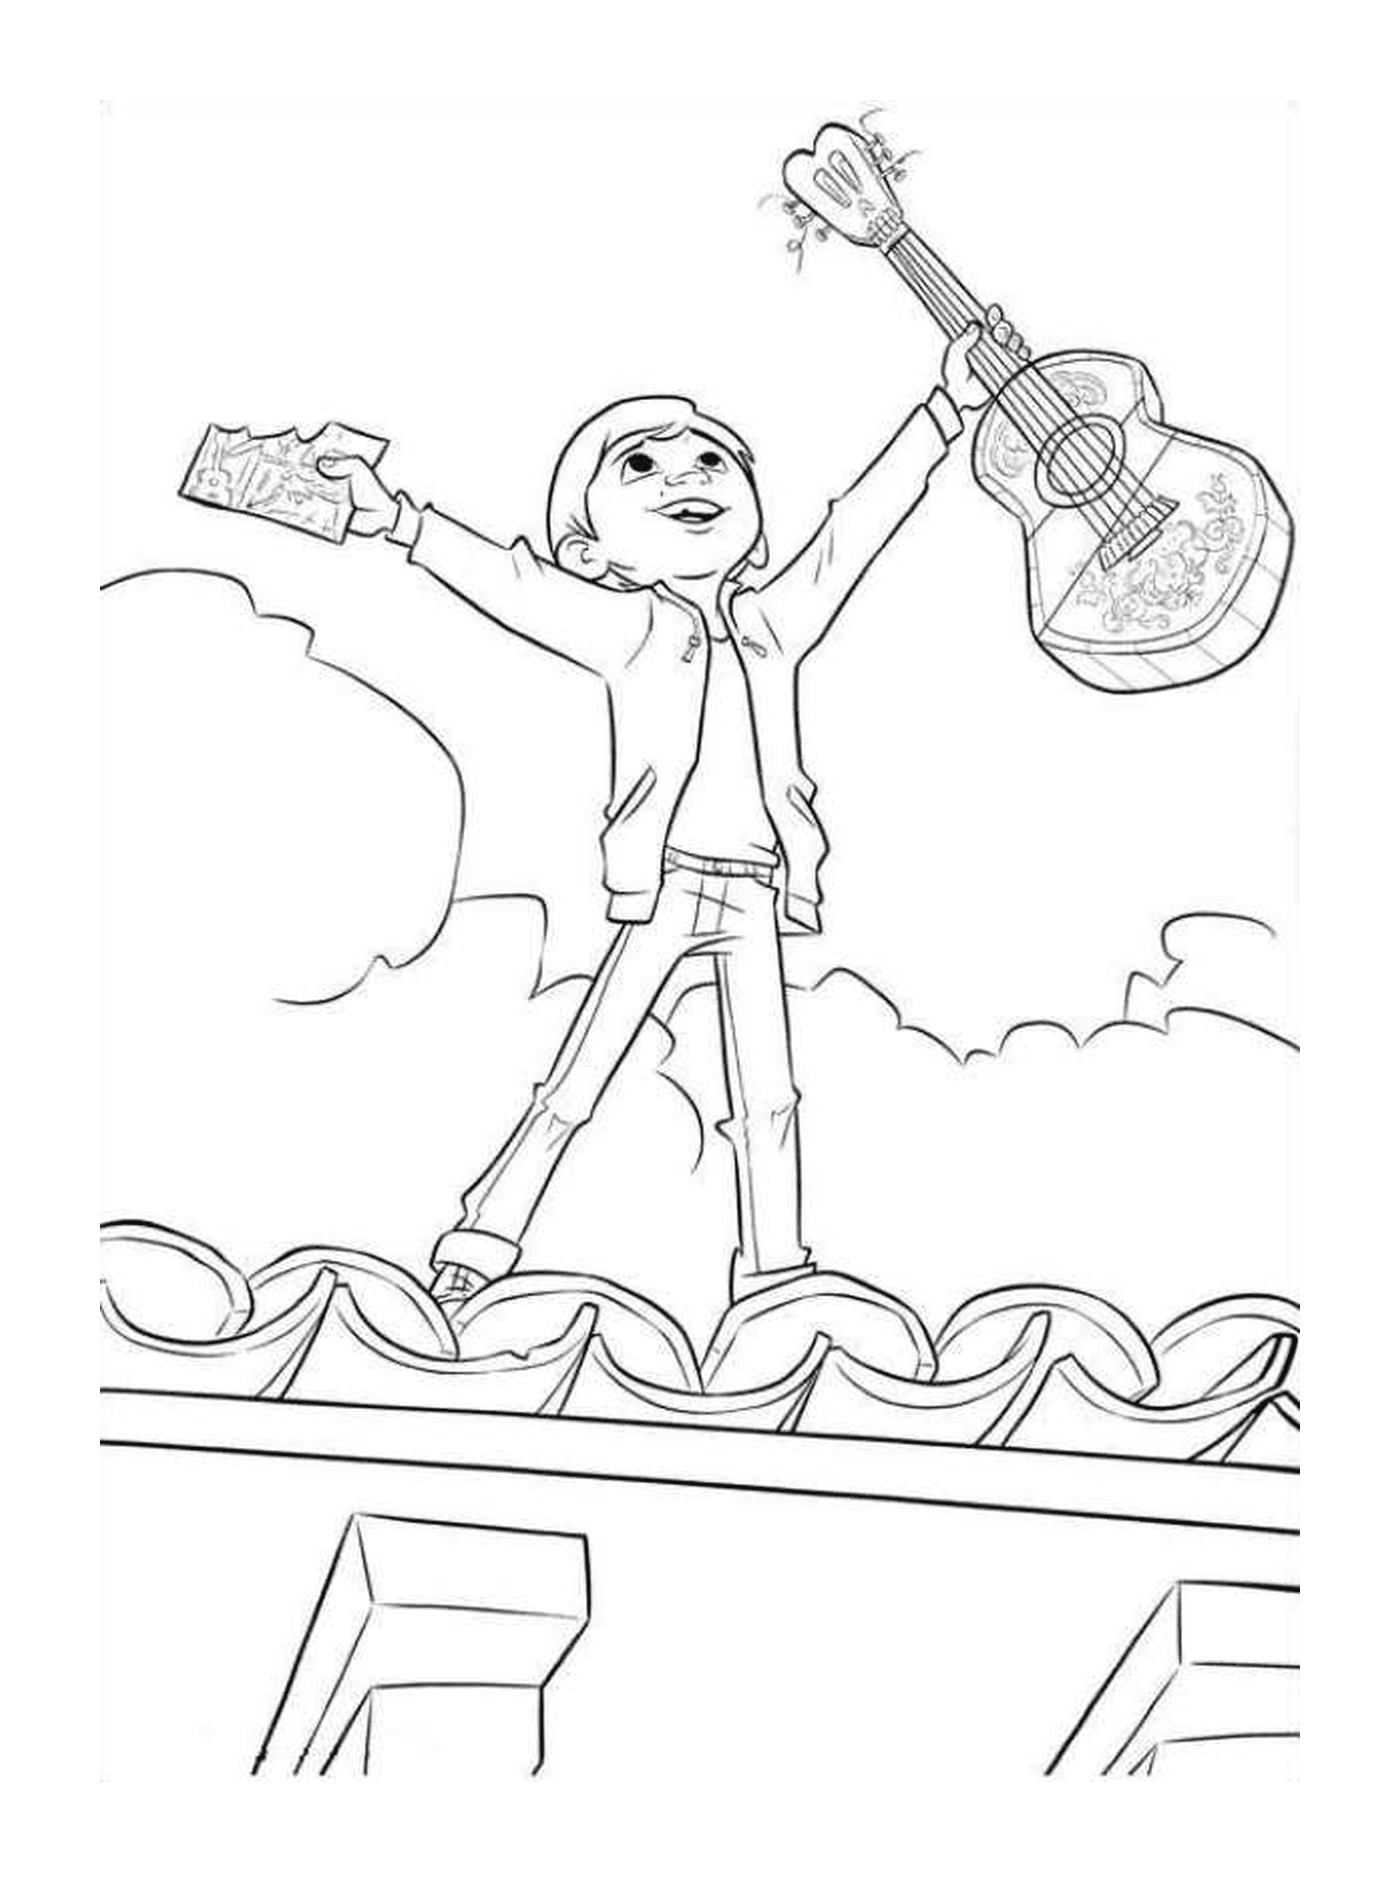   Miguel sur le toit de la maison avec sa guitare, symbole de liberté 